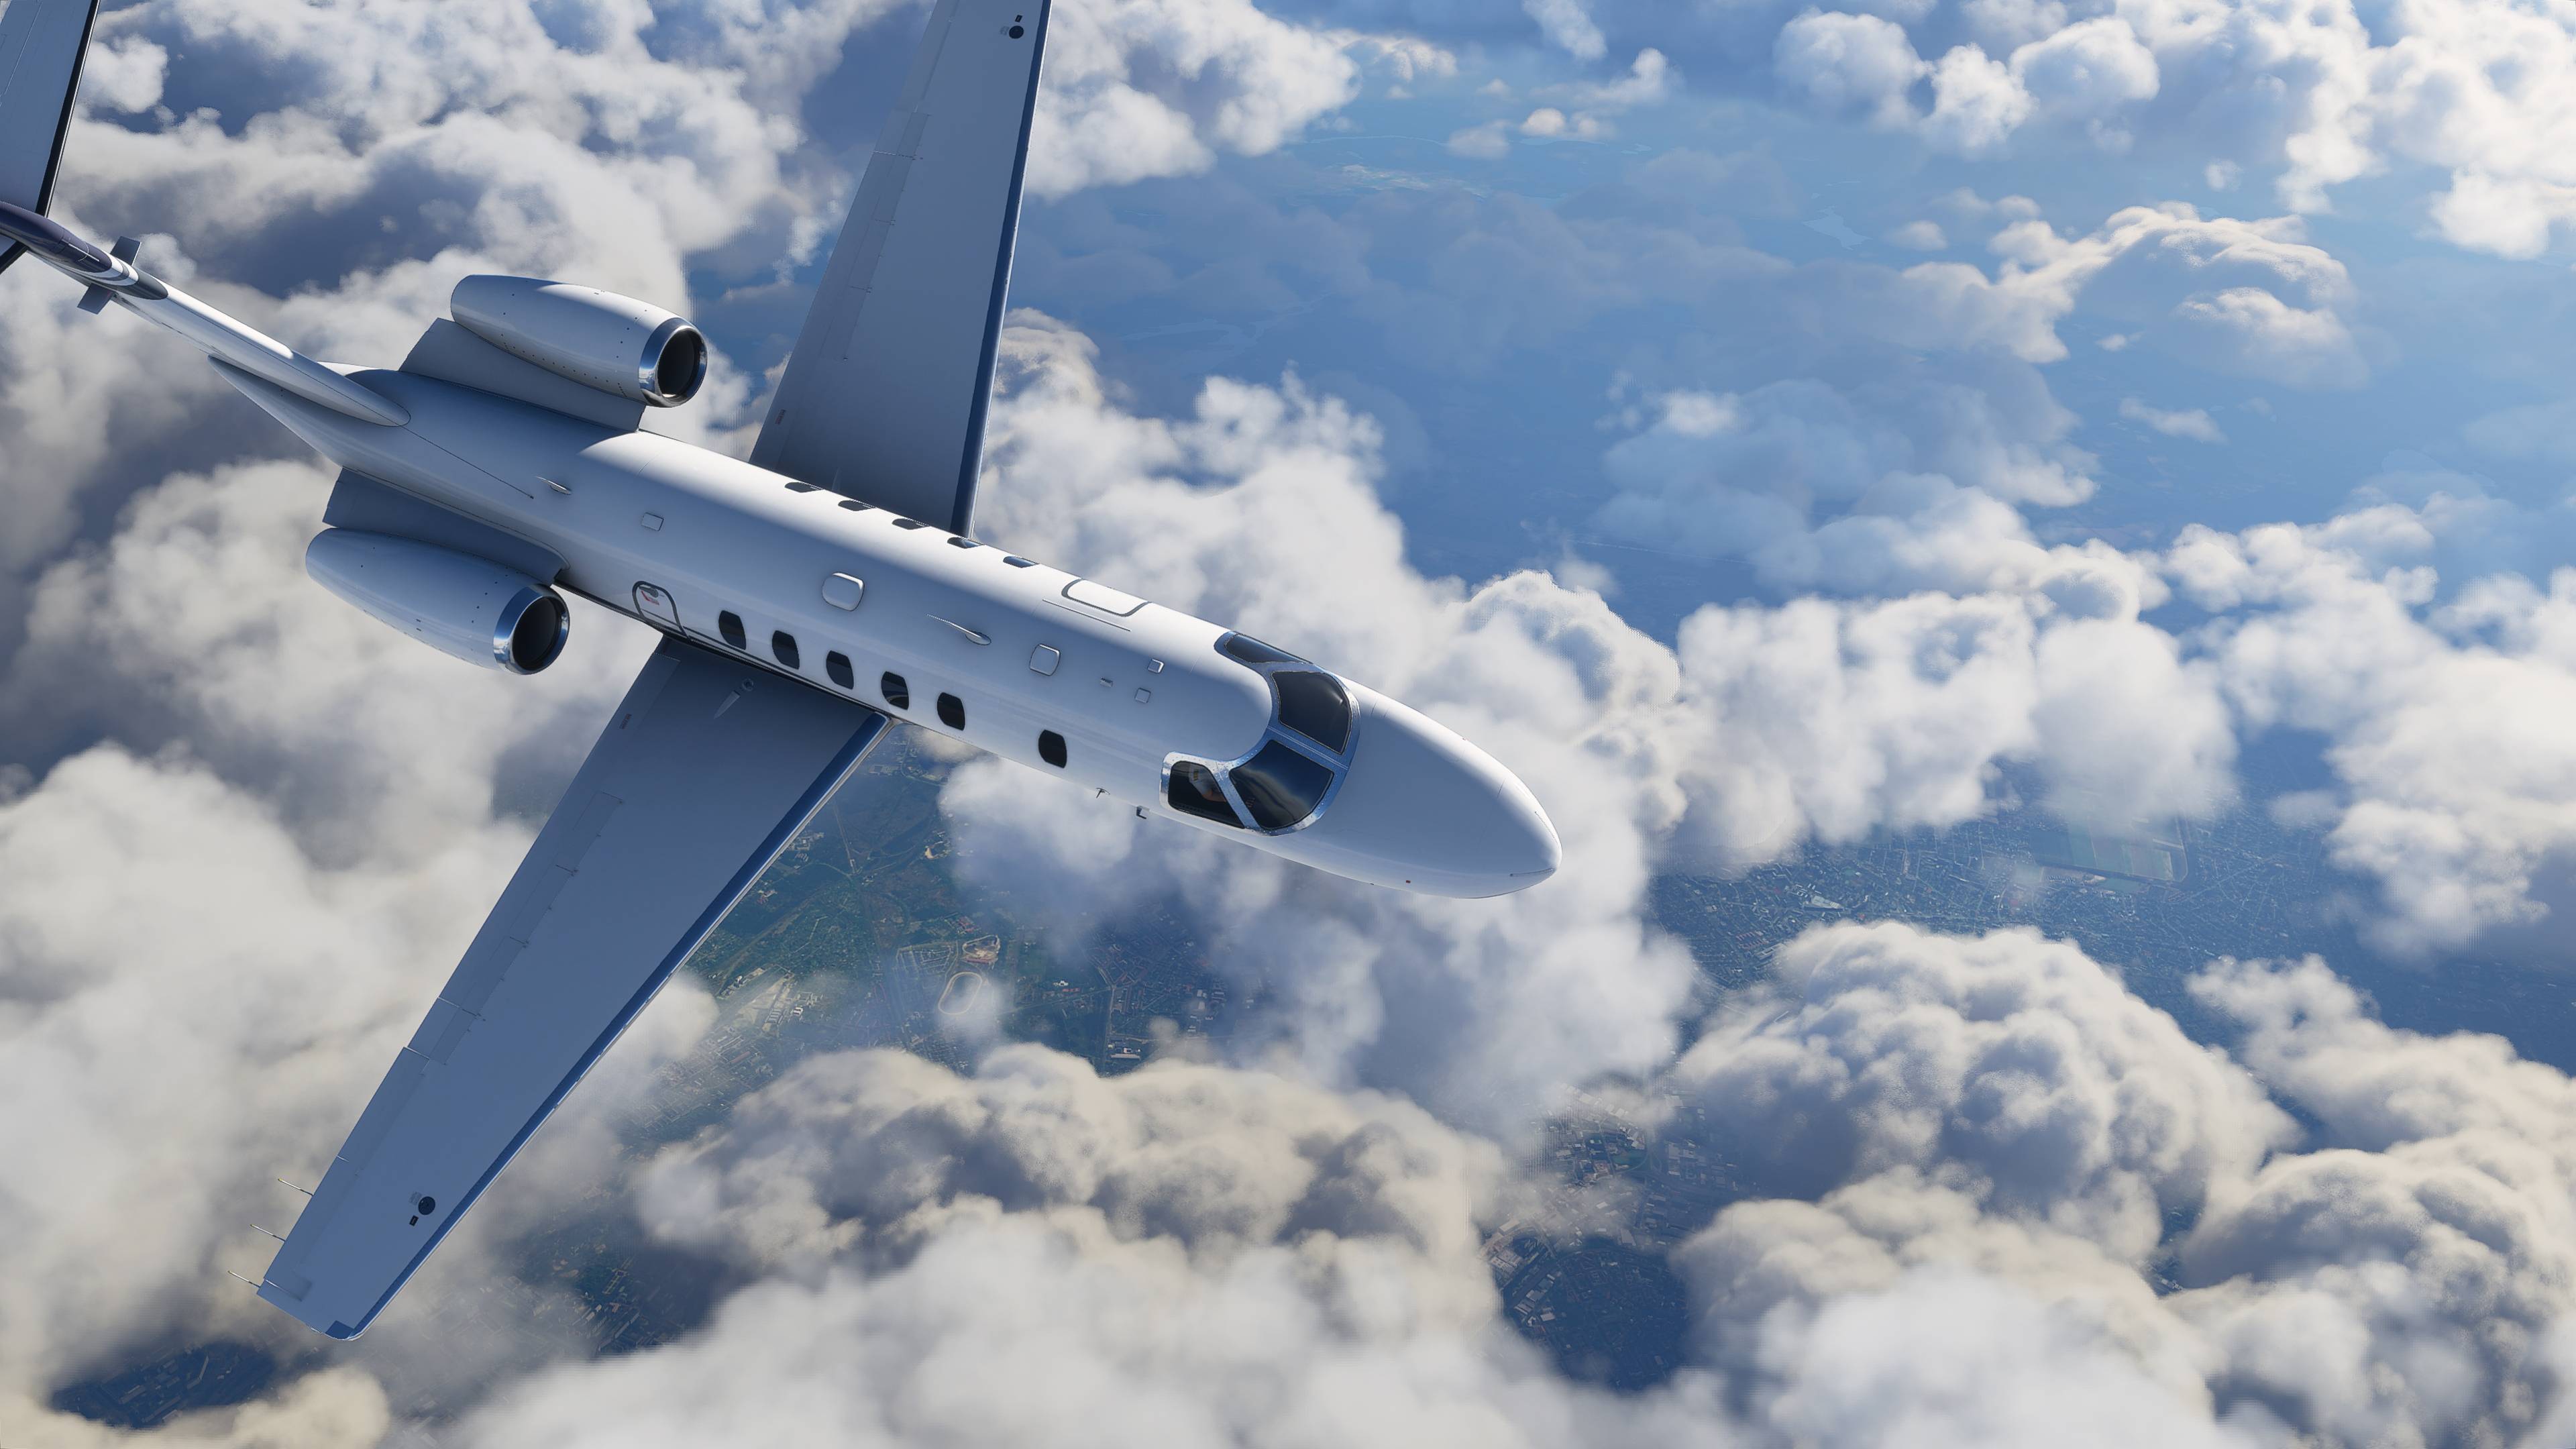 Se detallan los requisitos necesarios para jugar a Microsoft Flight Simulator en PC